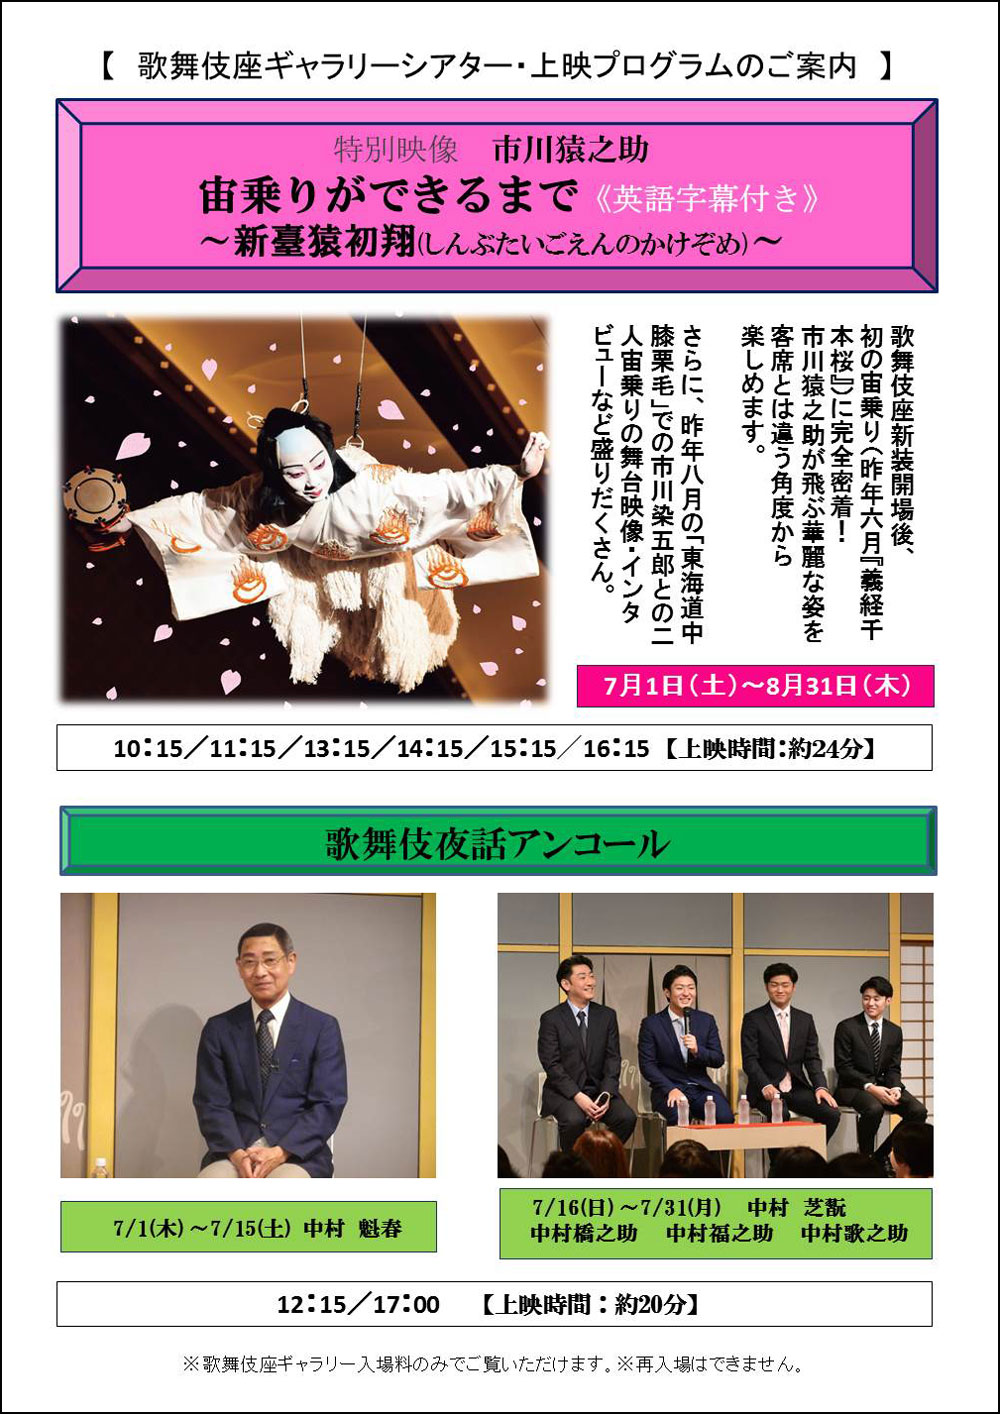 歌舞伎座ギャラリー「歌舞伎夜話アンコール」「特別映像」7月のスケジュール決定